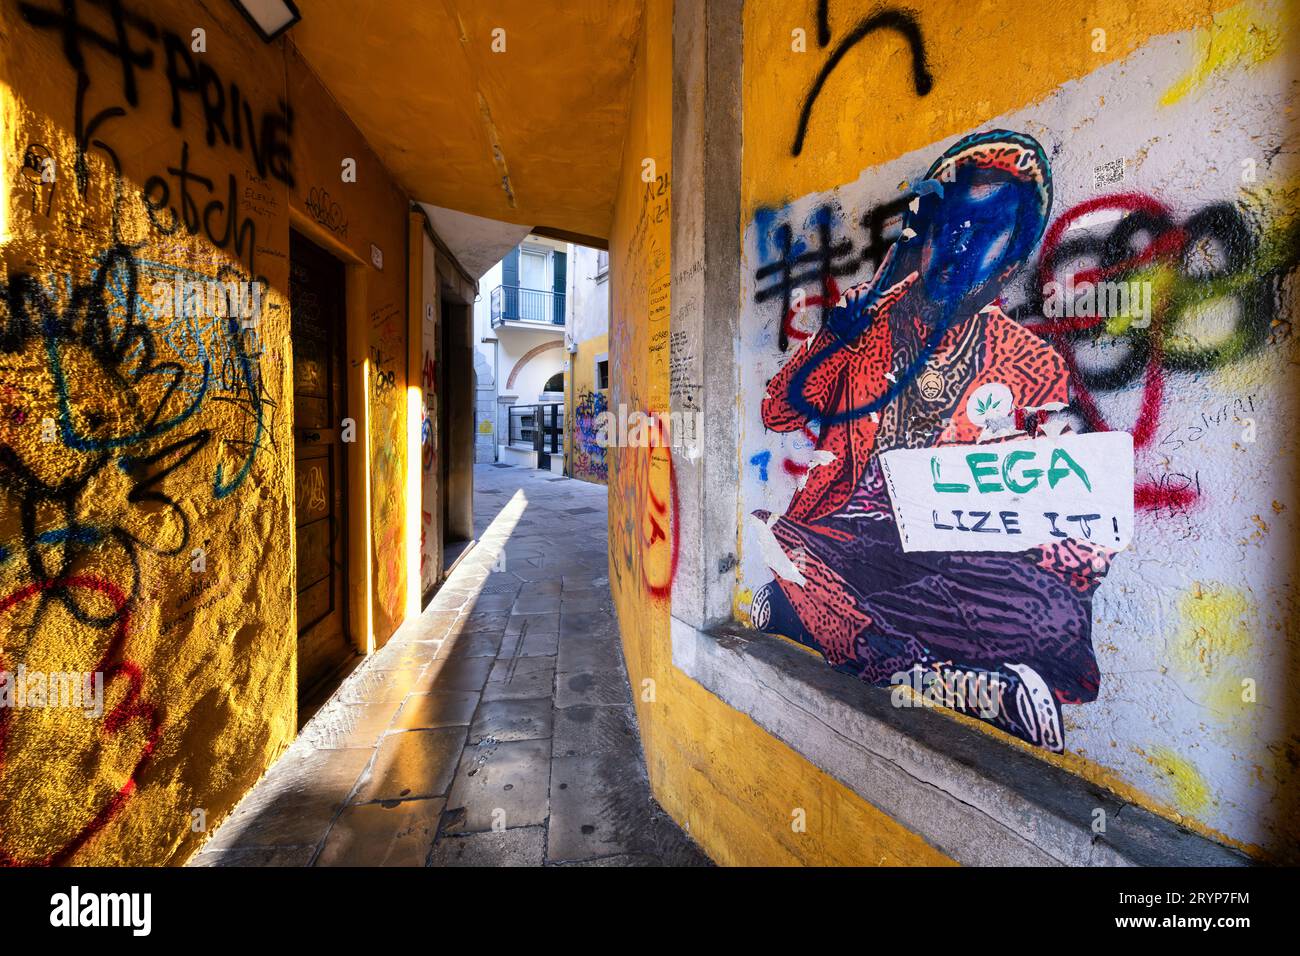 Graffiti su un muro di uno stretto vicolo italiano. Un uomo seduto mostra una lavagna con la frase "legalizzare". La Lega scritta in verde si riferisce al partito. Foto Stock